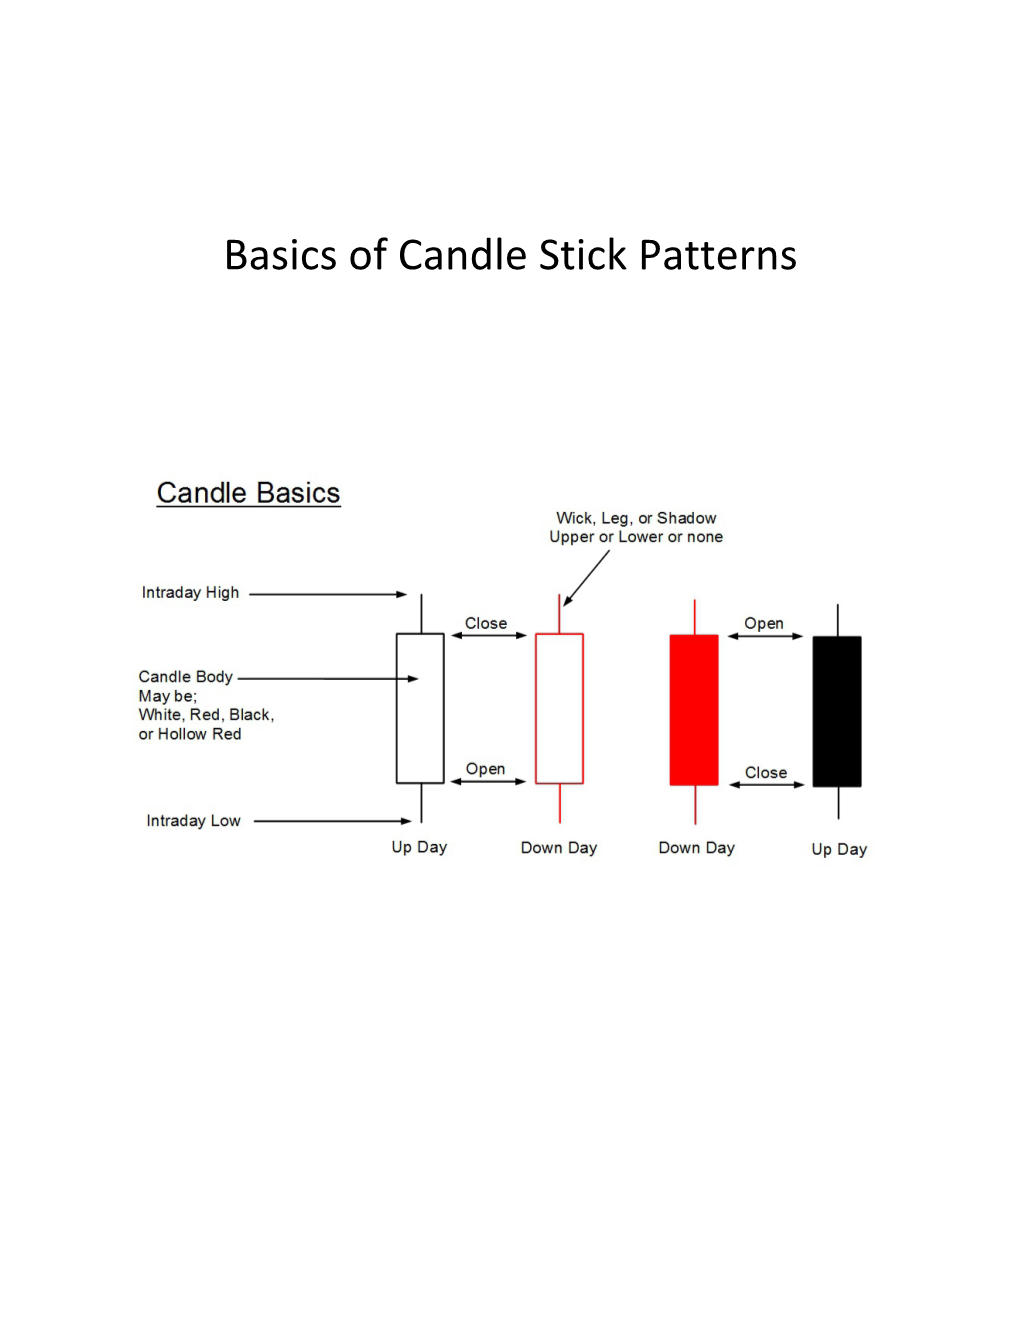 Basics of Candle Stick Patterns